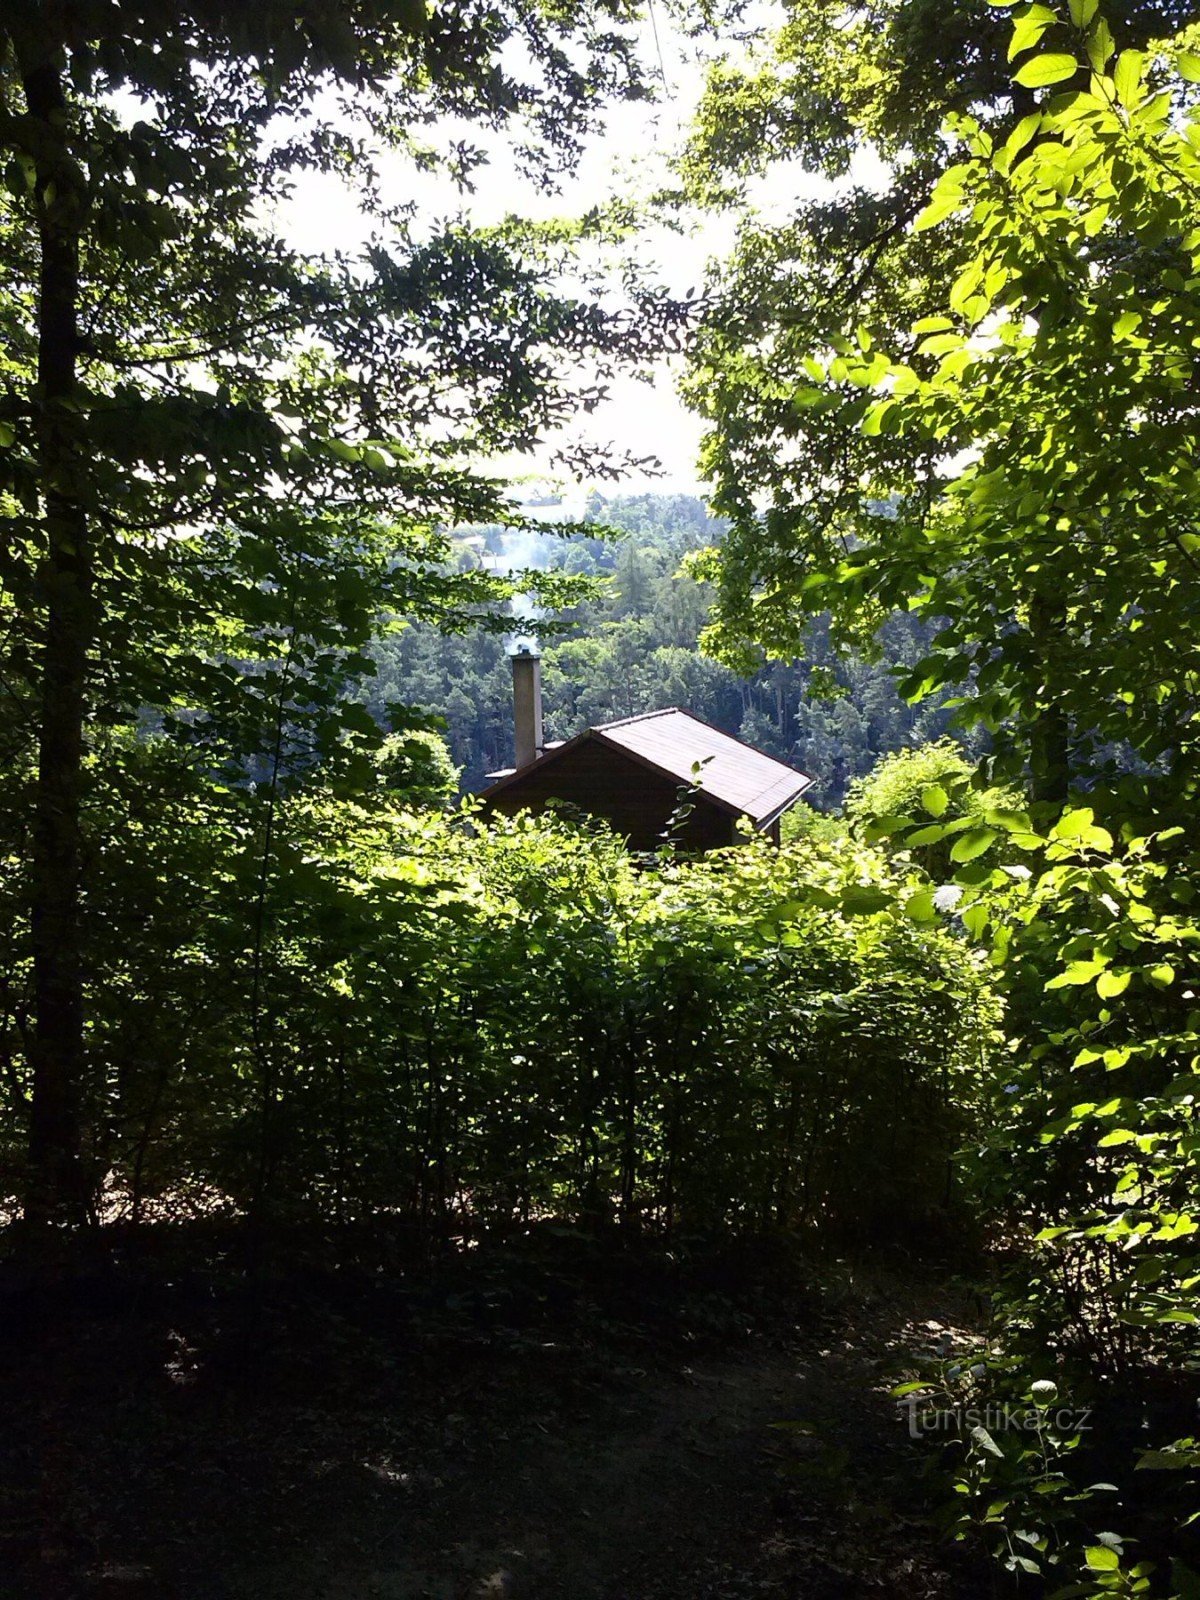 3. Uma cabana aparece no meio da vegetação